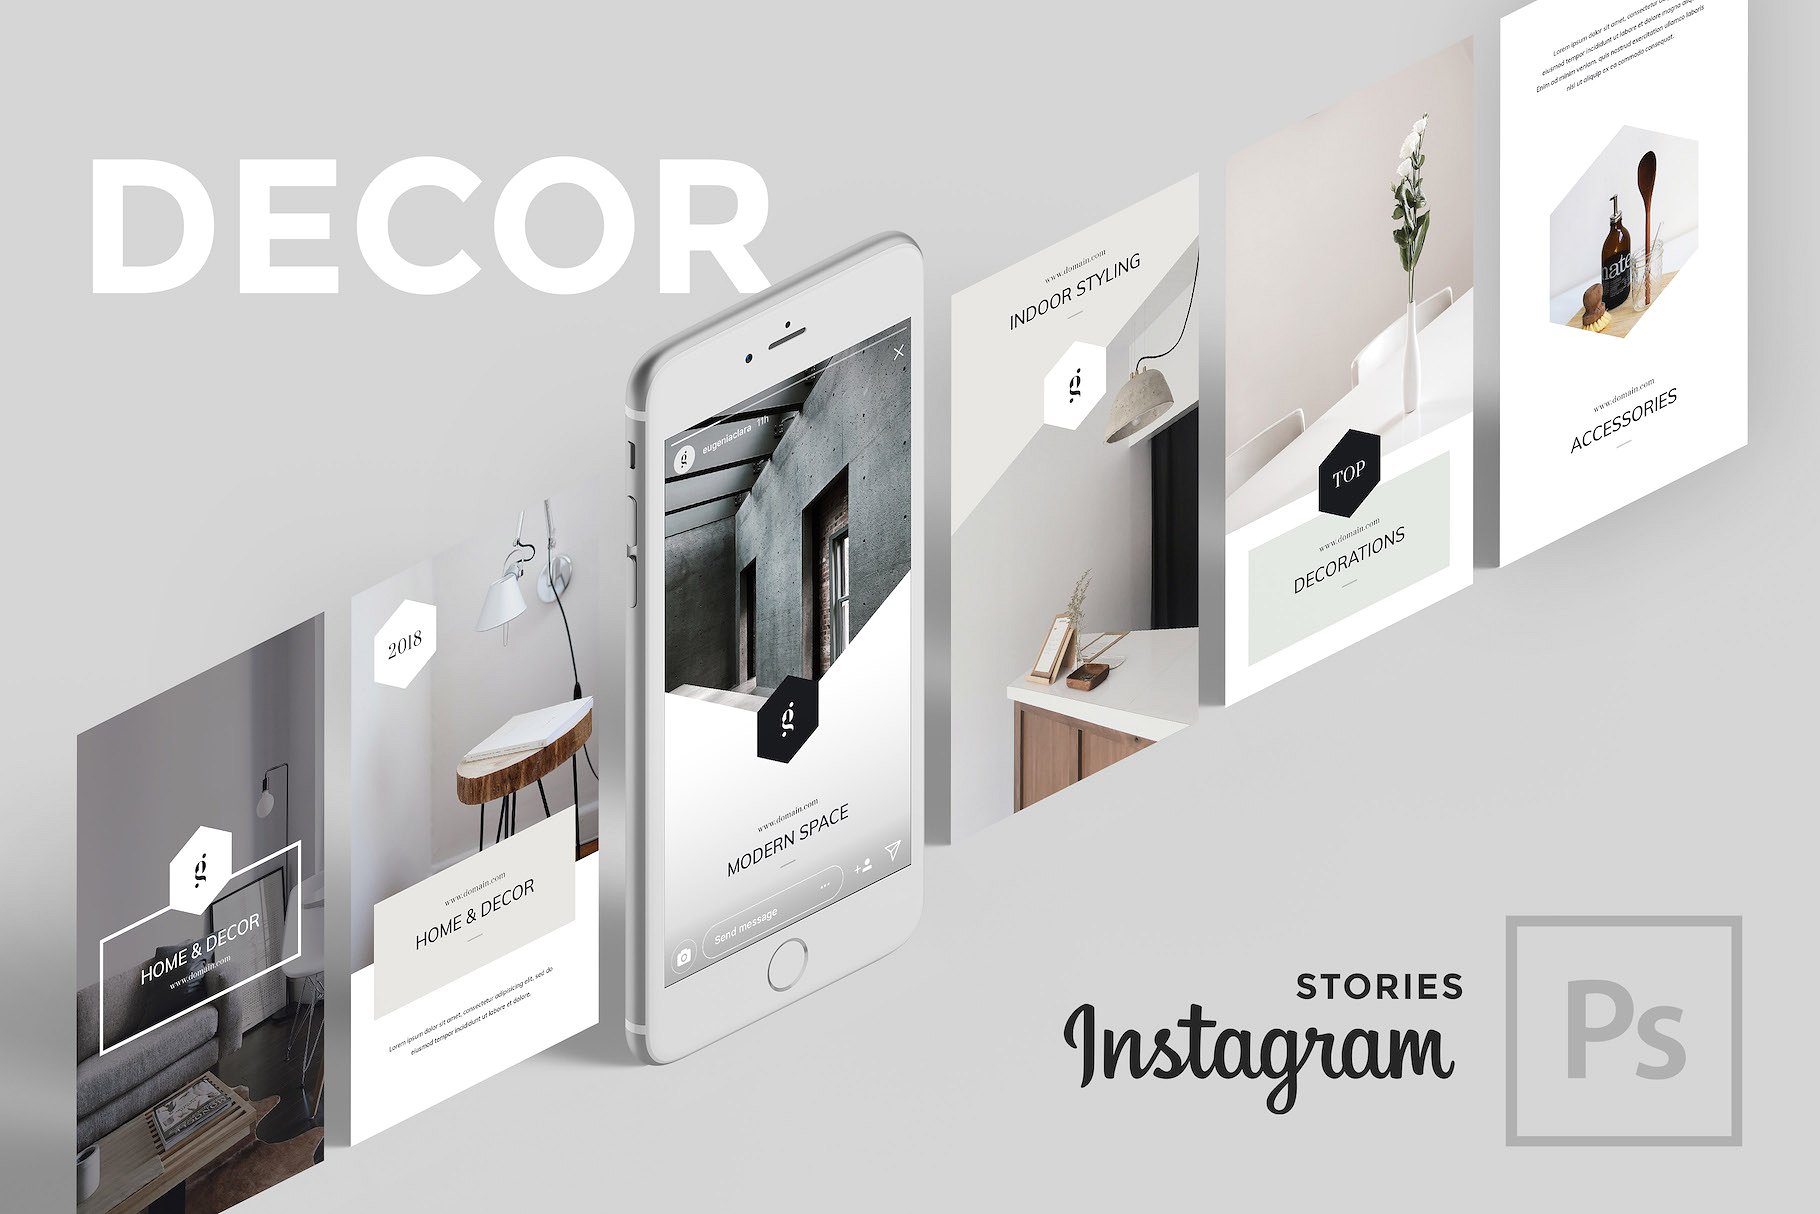 社交媒体文章贴图模板素材库精选素材 Decor PSD Instagram Stories插图